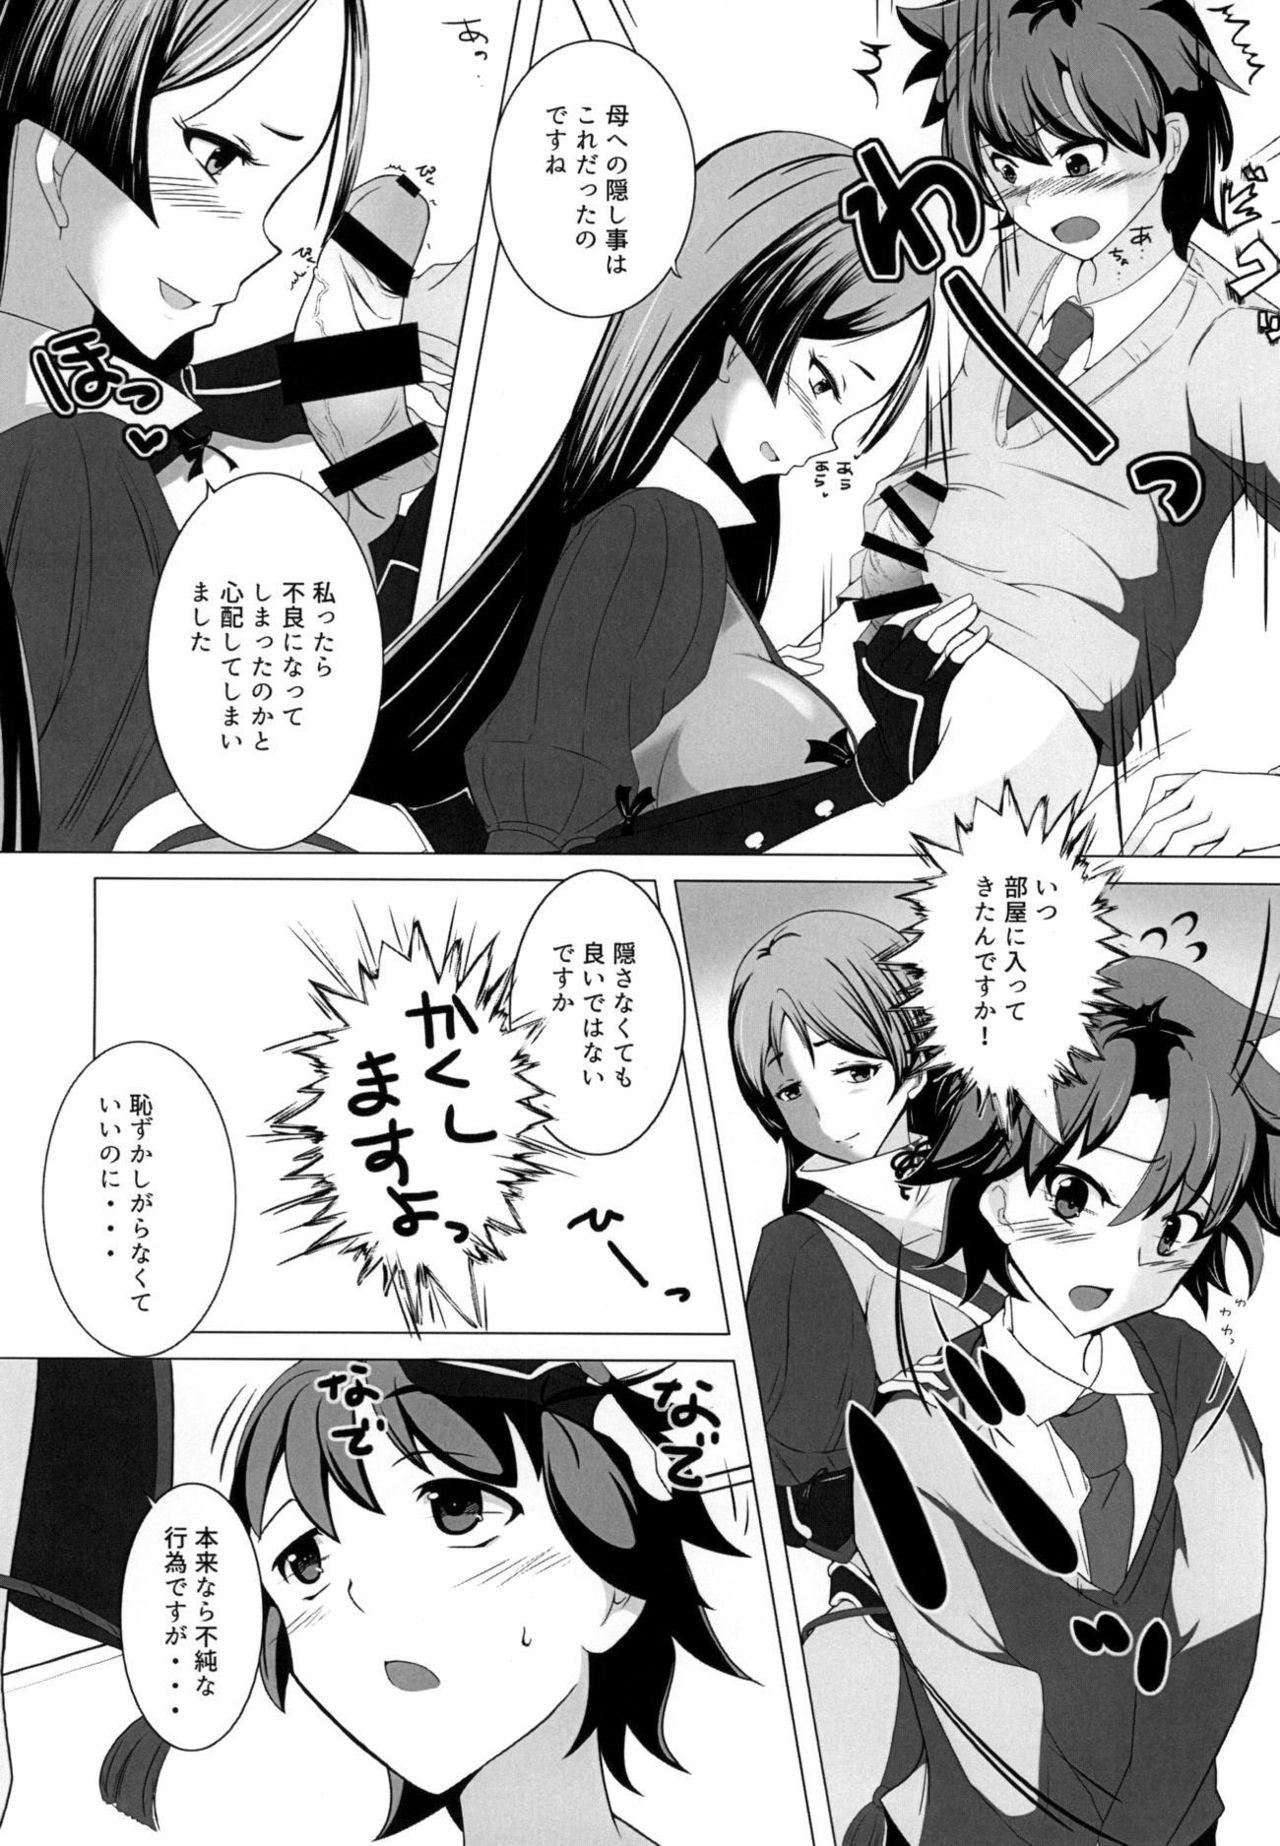 Zorra Shinsei na Hahaue o Kegashite Shimau Manga - Fate grand order Sextoys - Page 7